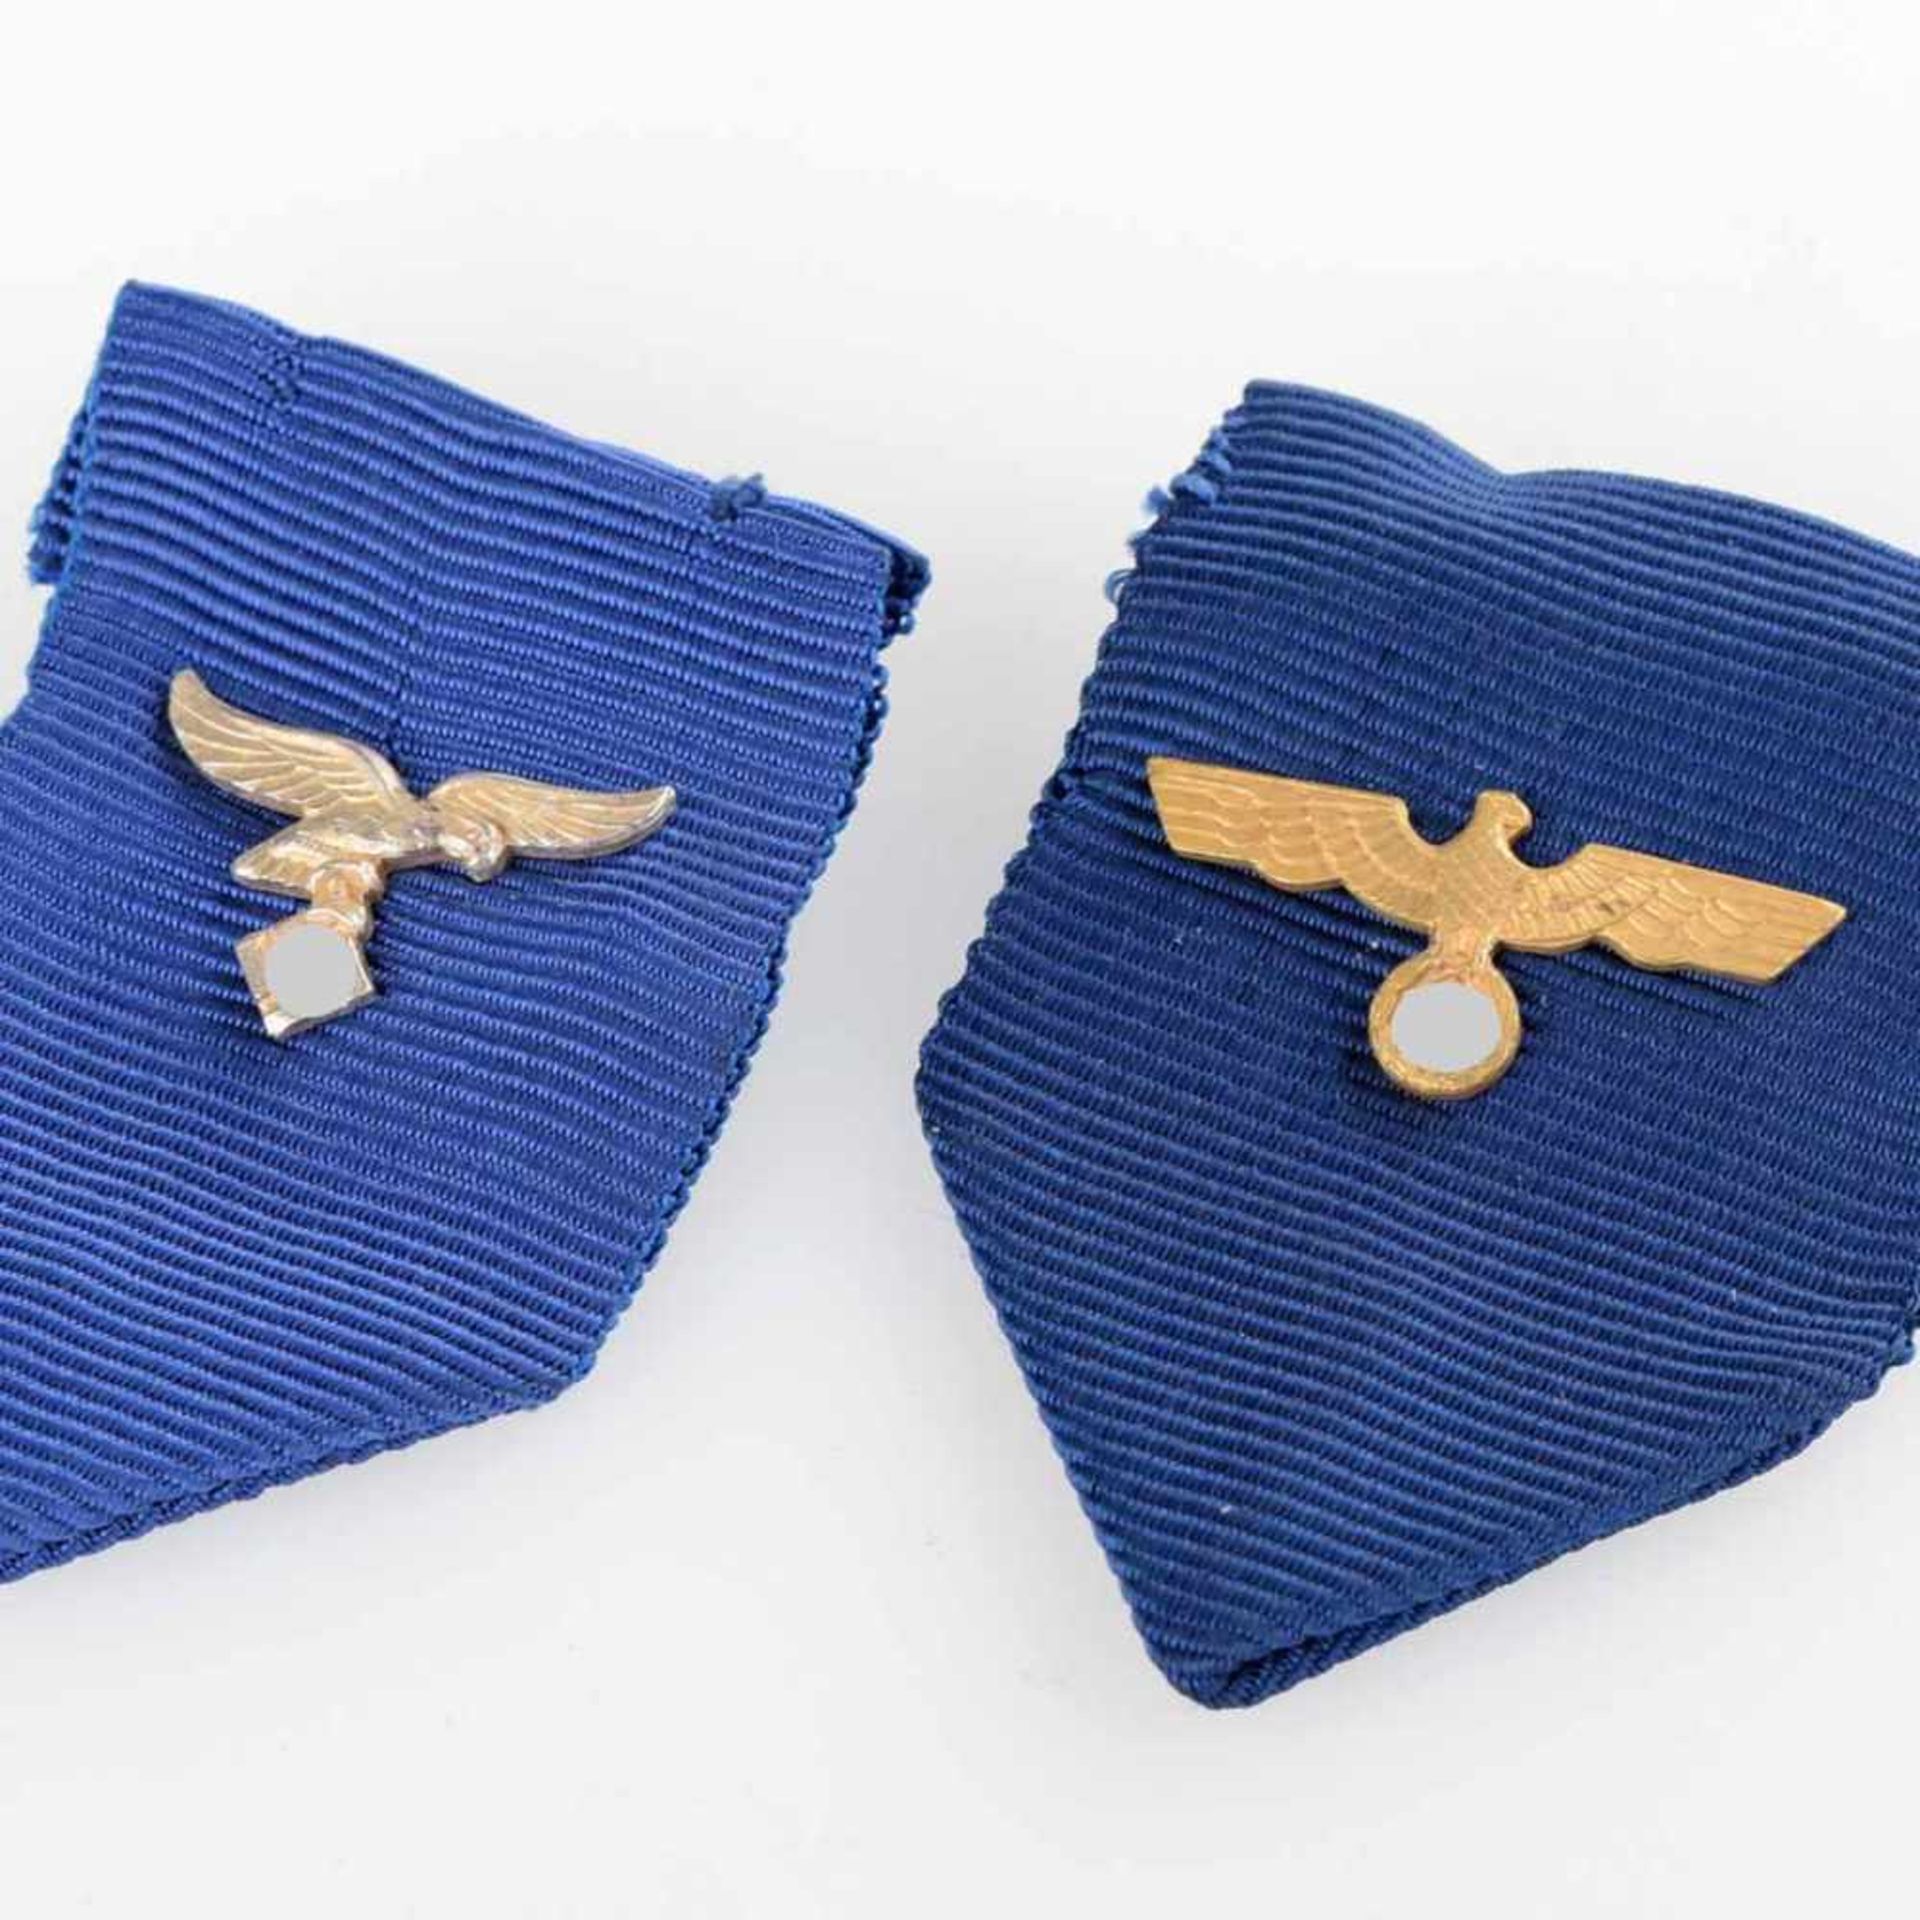 Auszeichnungen III. Reich insg. zwei blaue Bänder mit Adler und Swastika, für die